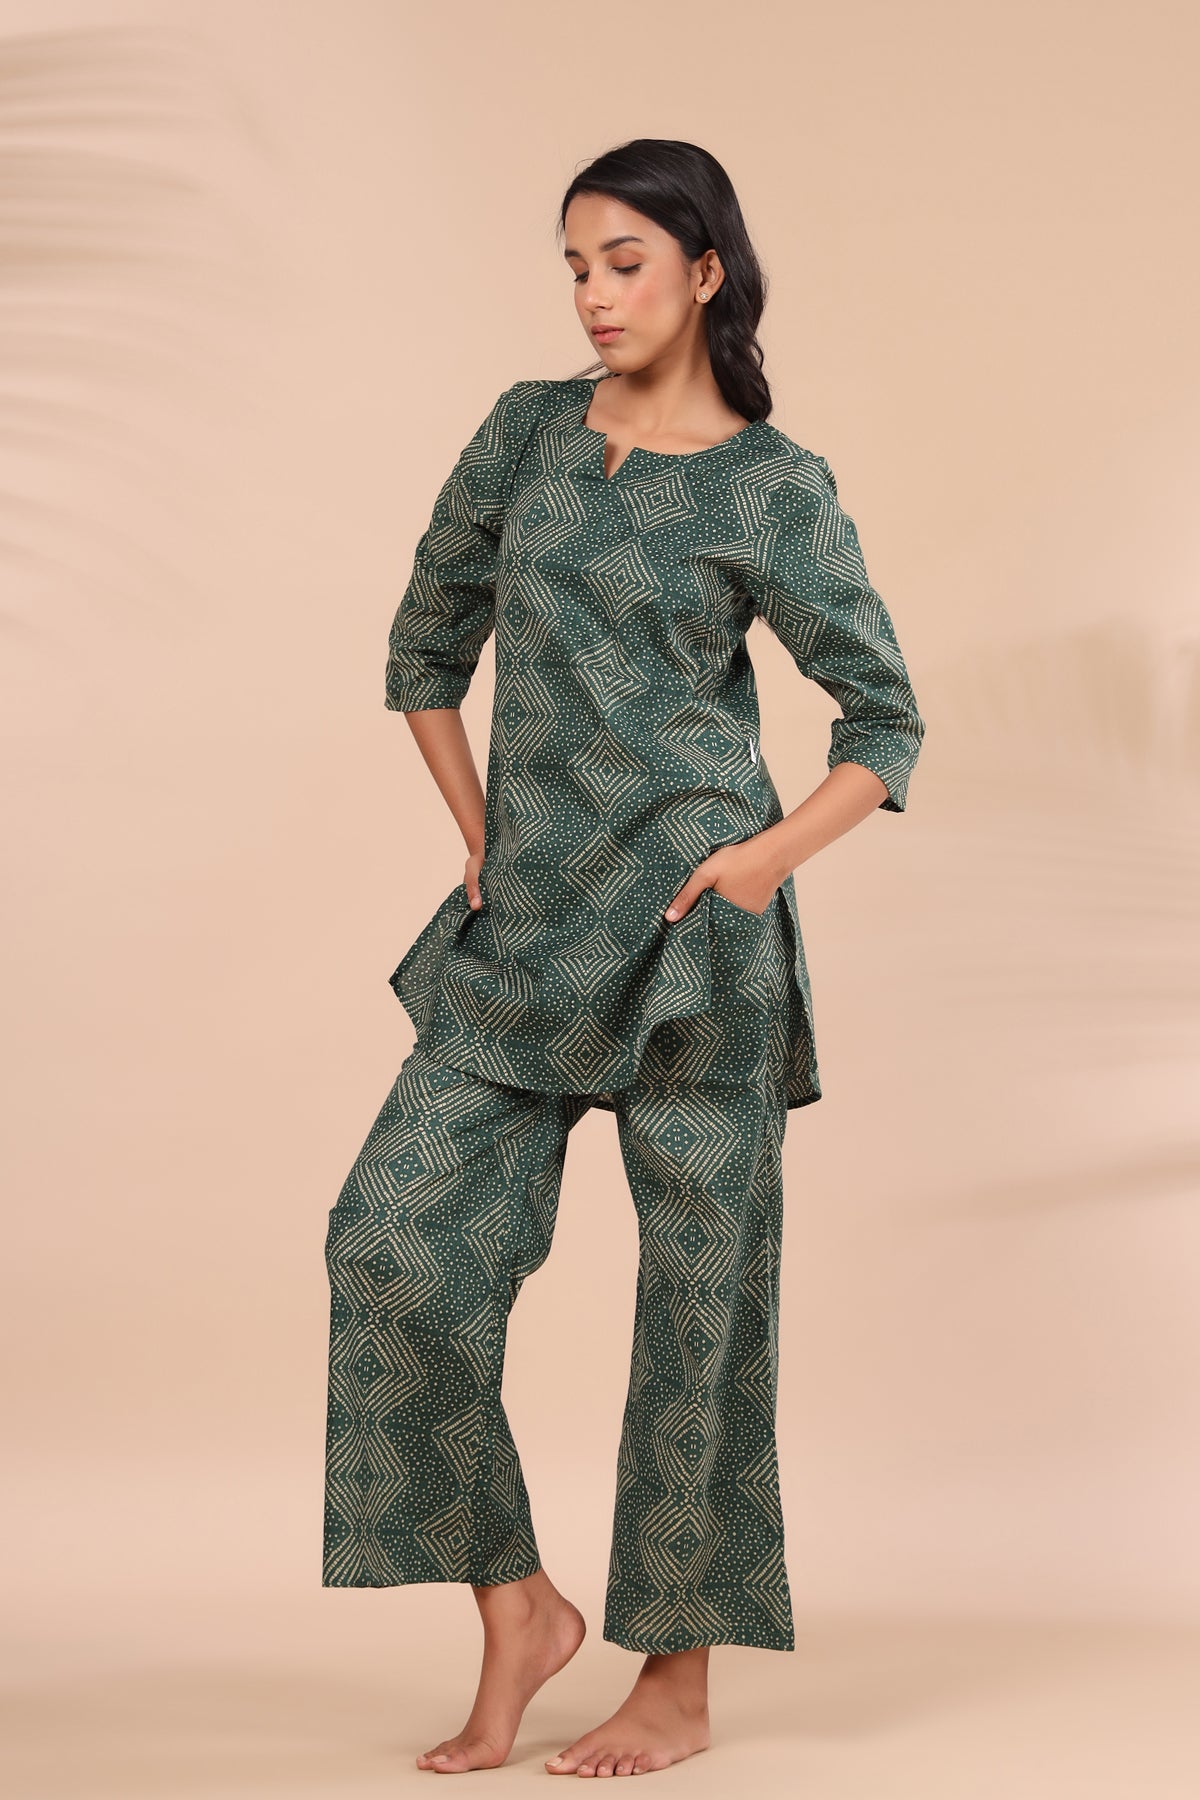 Zig-Zag Bhandani on Green Loungewear